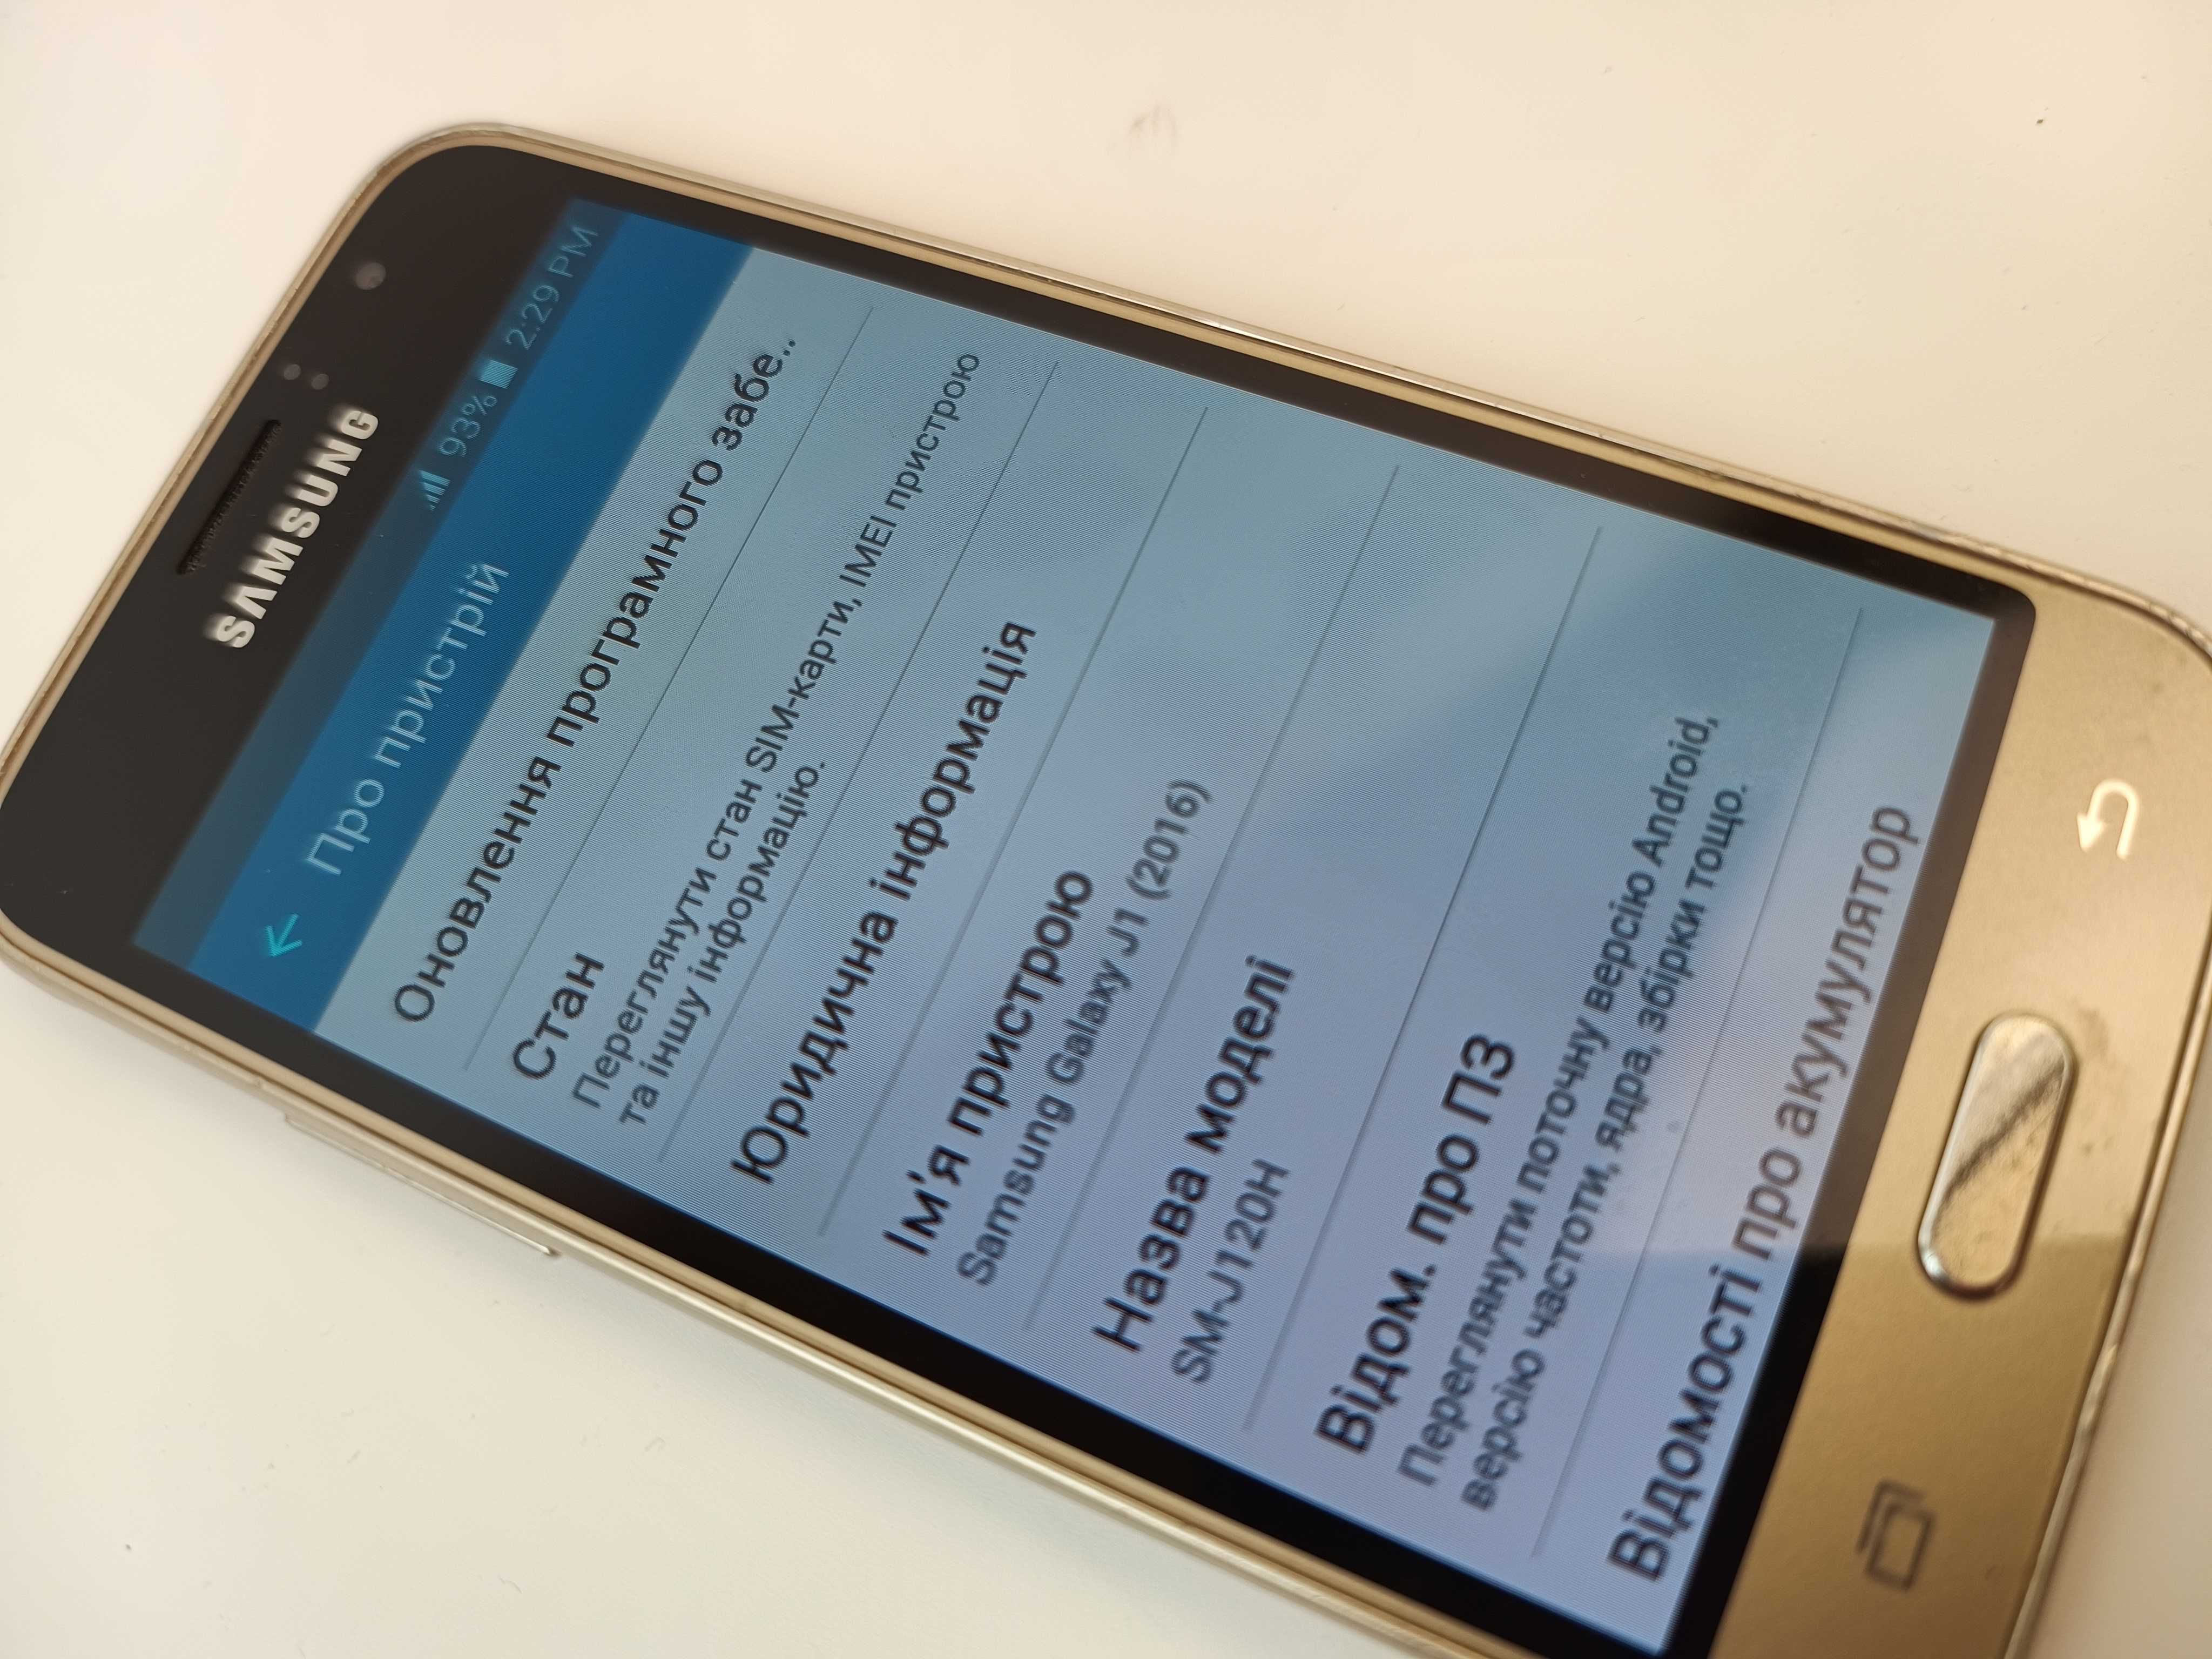 Смартфон Samsung Galaxy J1 2016 1/8GB Gold, вживаний